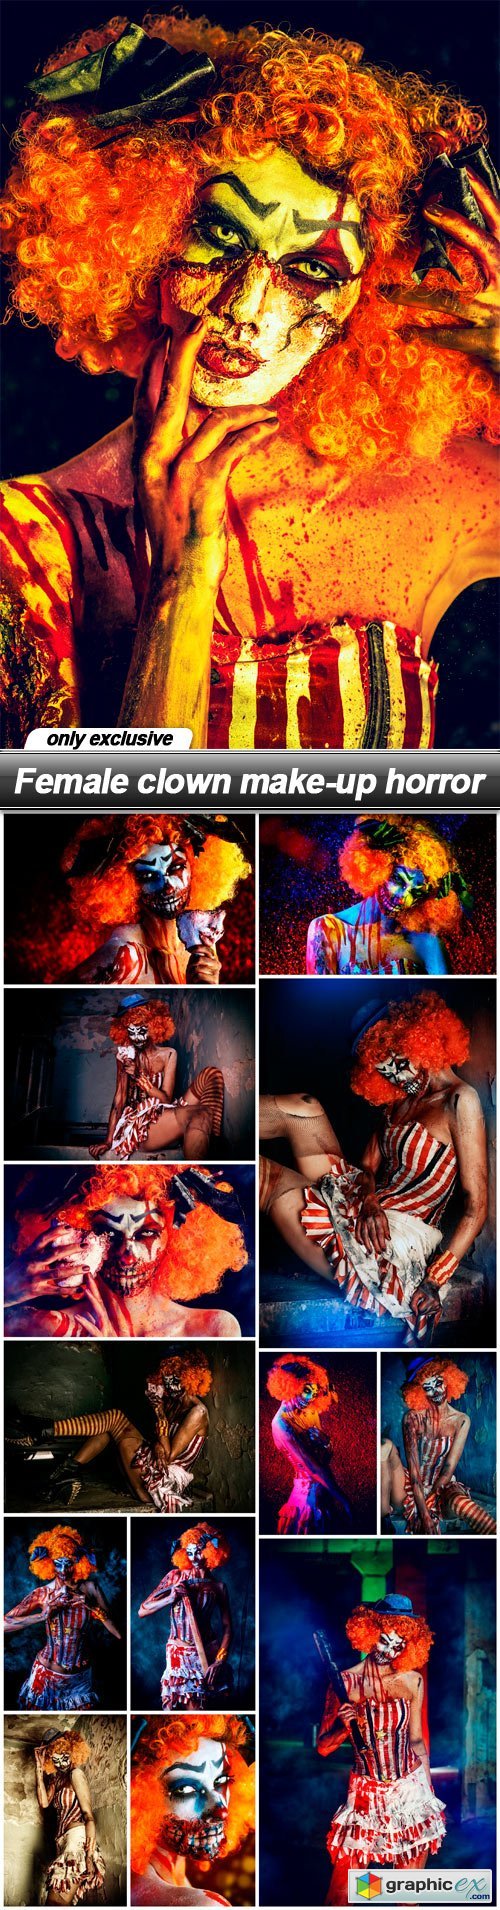 Female clown make-up horror - 14 UHQ JPEG